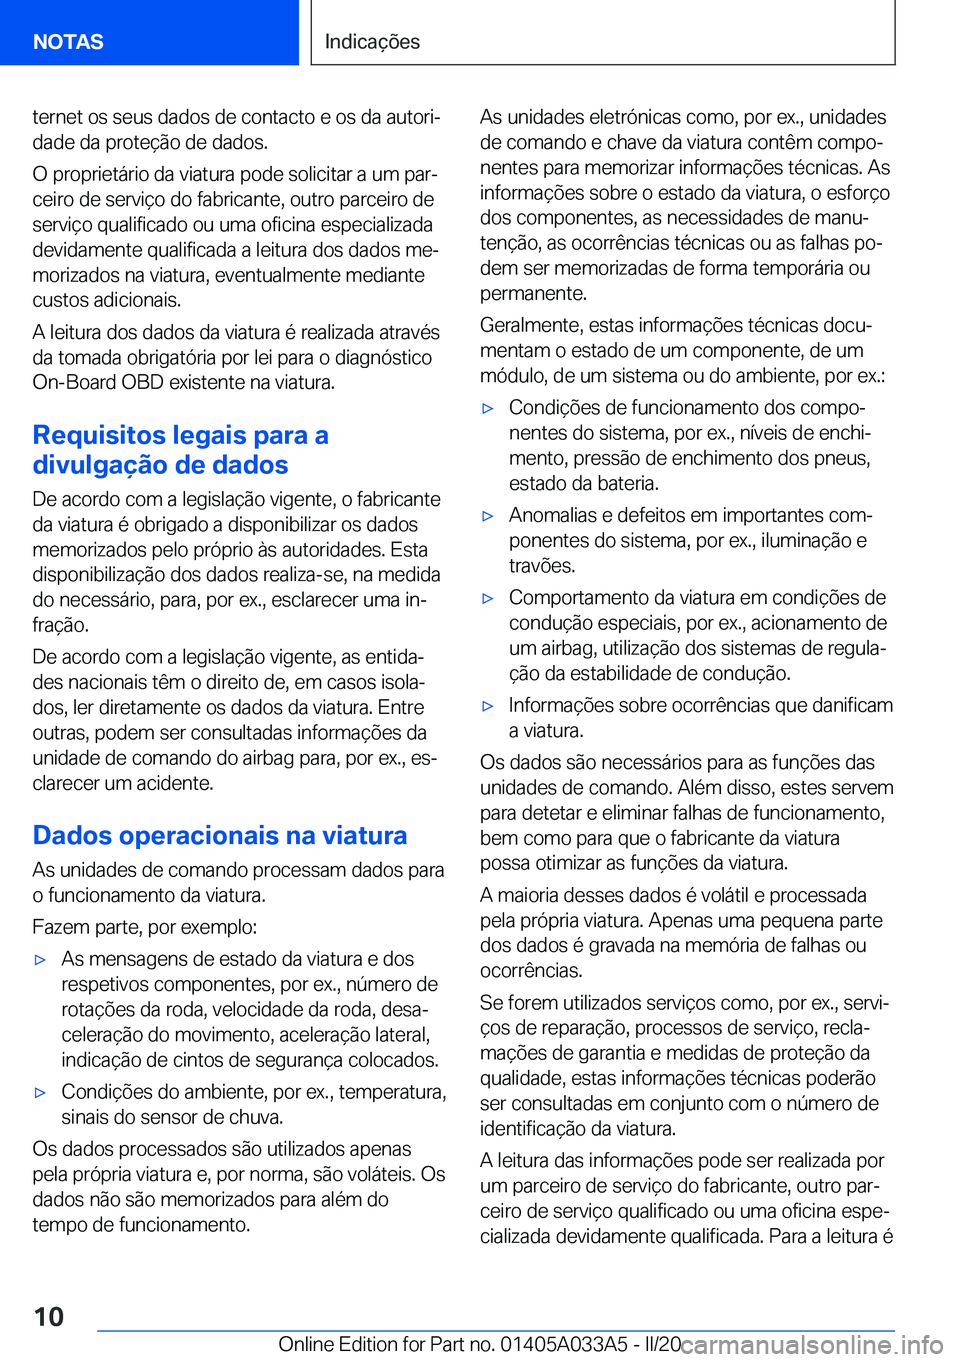 BMW M8 GRAN COUPE 2020  Manual do condutor (in Portuguese) �t�e�r�n�e�t��o�s��s�e�u�s��d�a�d�o�s��d�e��c�o�n�t�a�c�t�o��e��o�s��d�a��a�u�t�o�r�iª
�d�a�d�e��d�a��p�r�o�t�e�